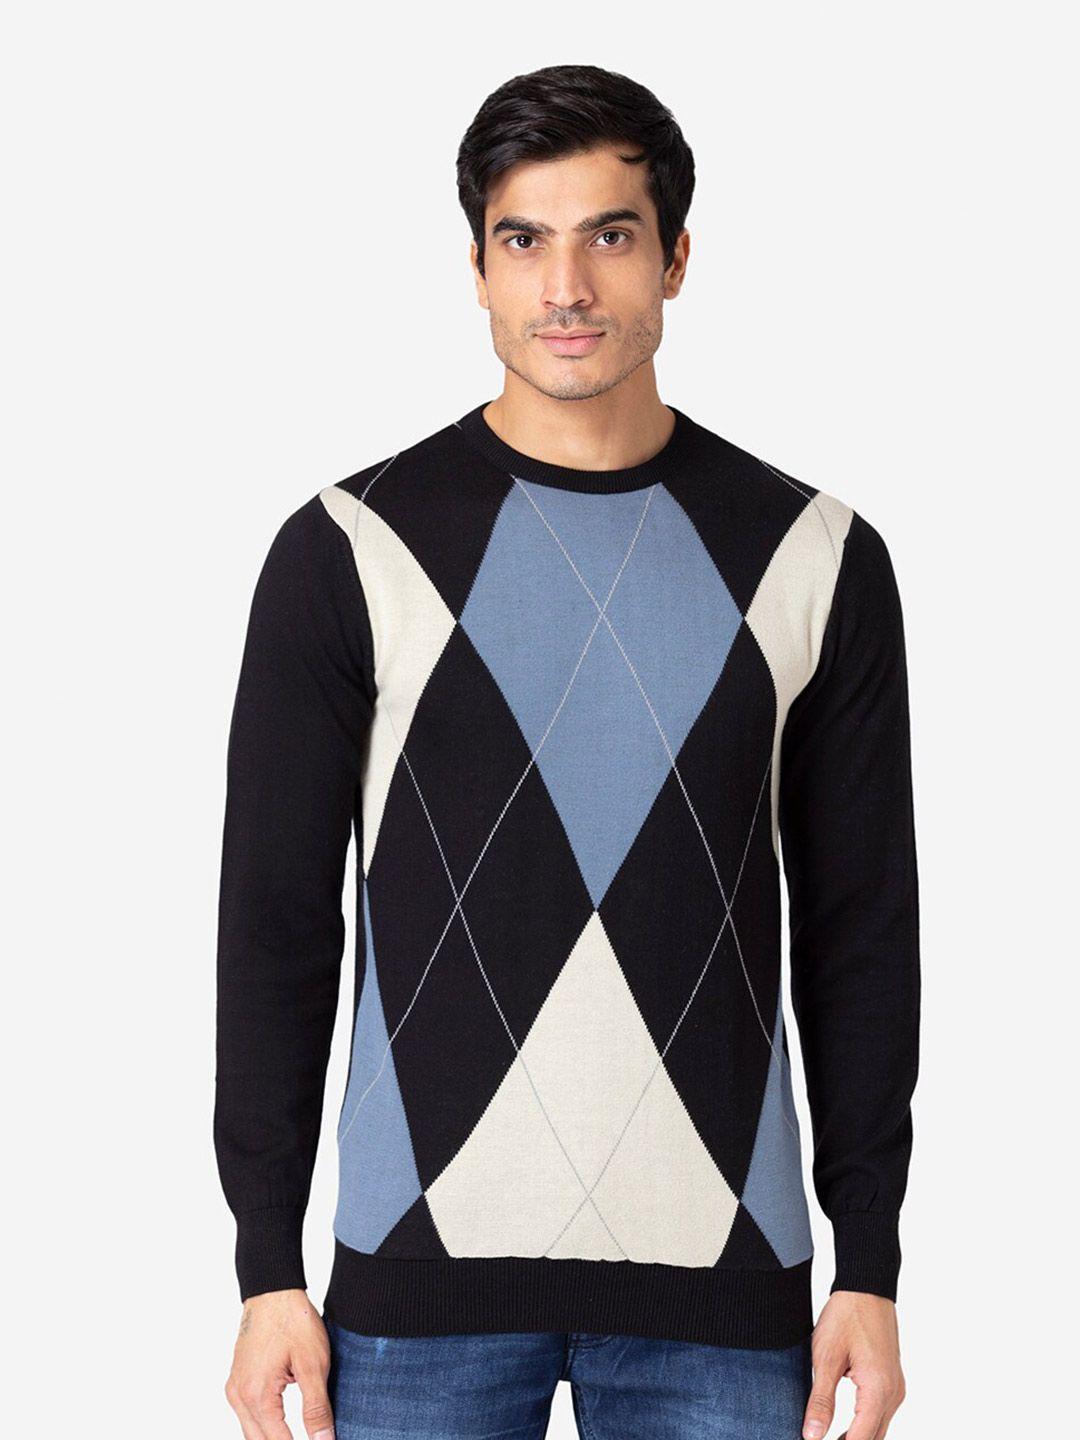 allen-cooper-men-black-&-blue-argyle-printed-pullover